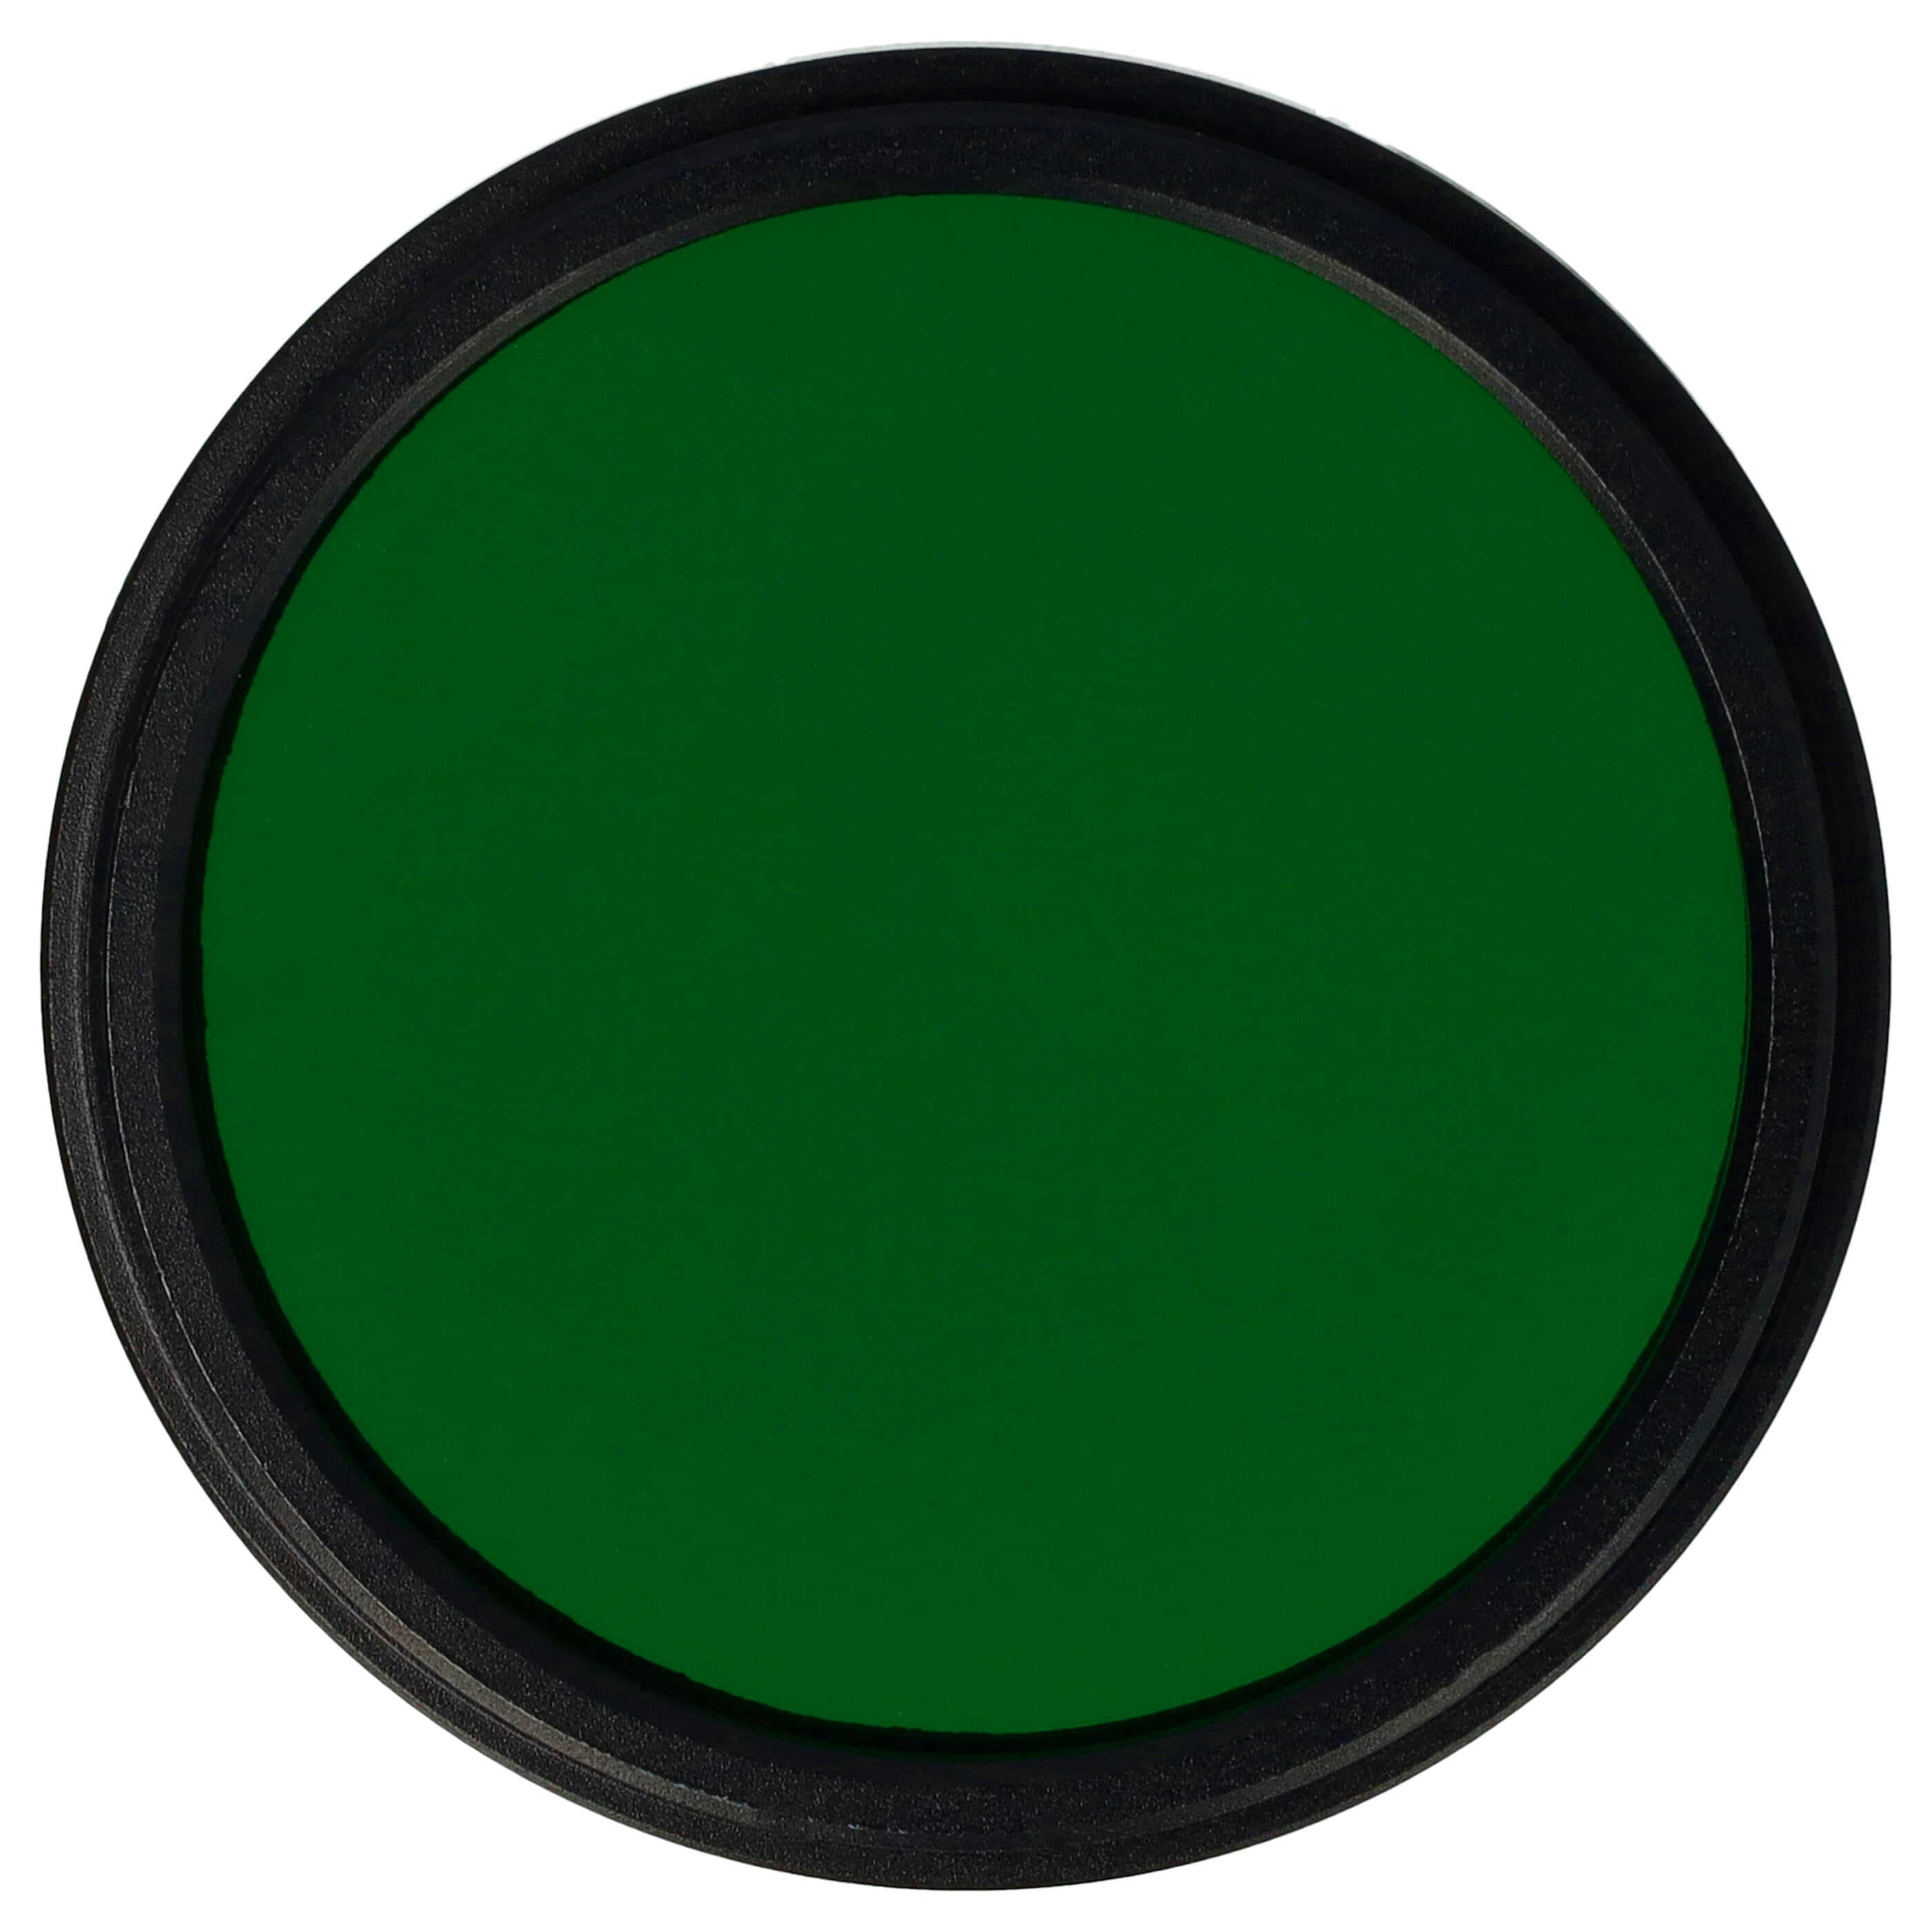 Farbfilter grün passend für Kamera Objektive mit 43 mm Filtergewinde - Grünfilter